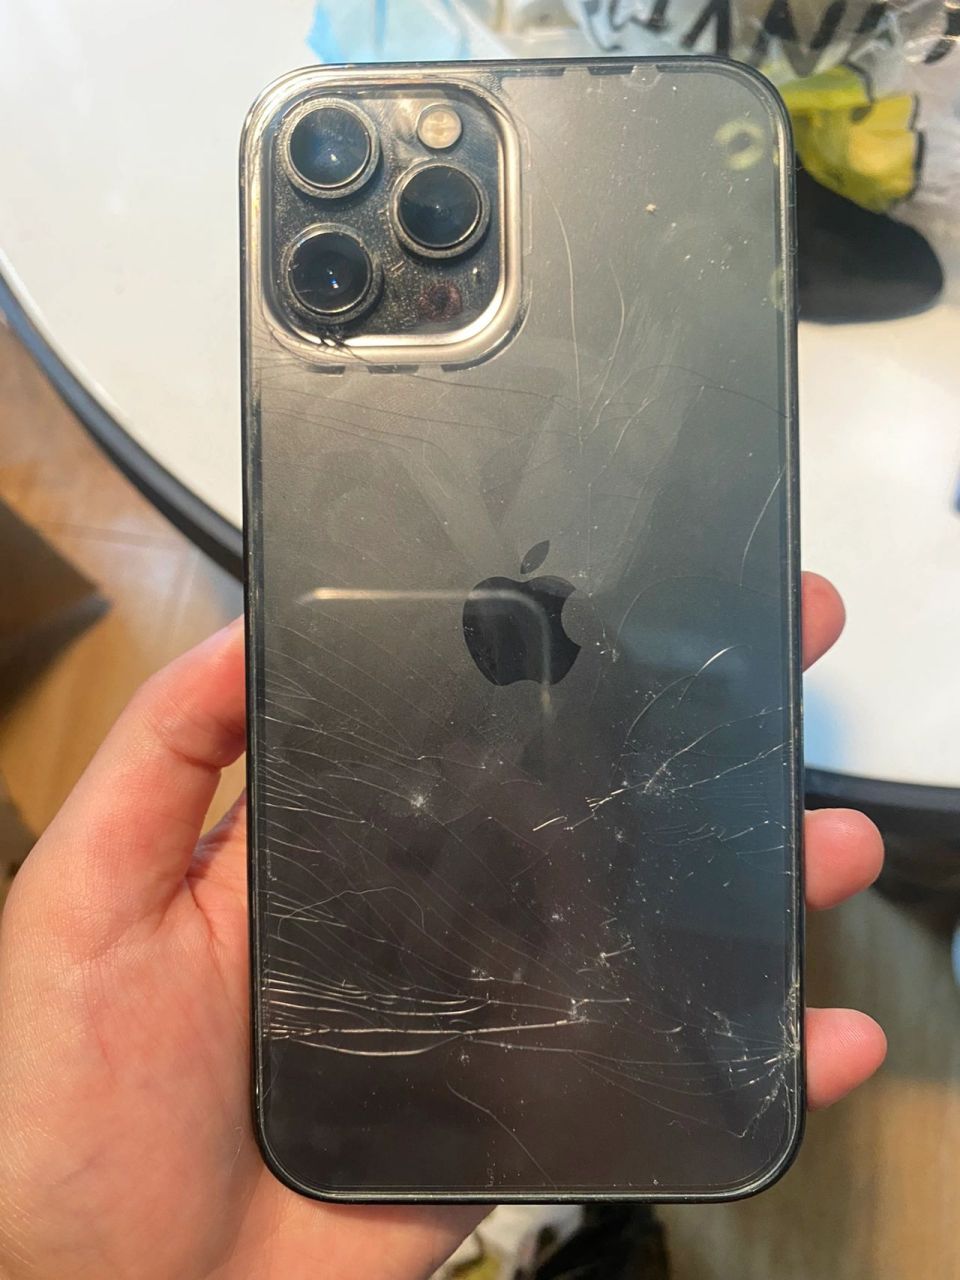 手机坏了的照片 真实图片